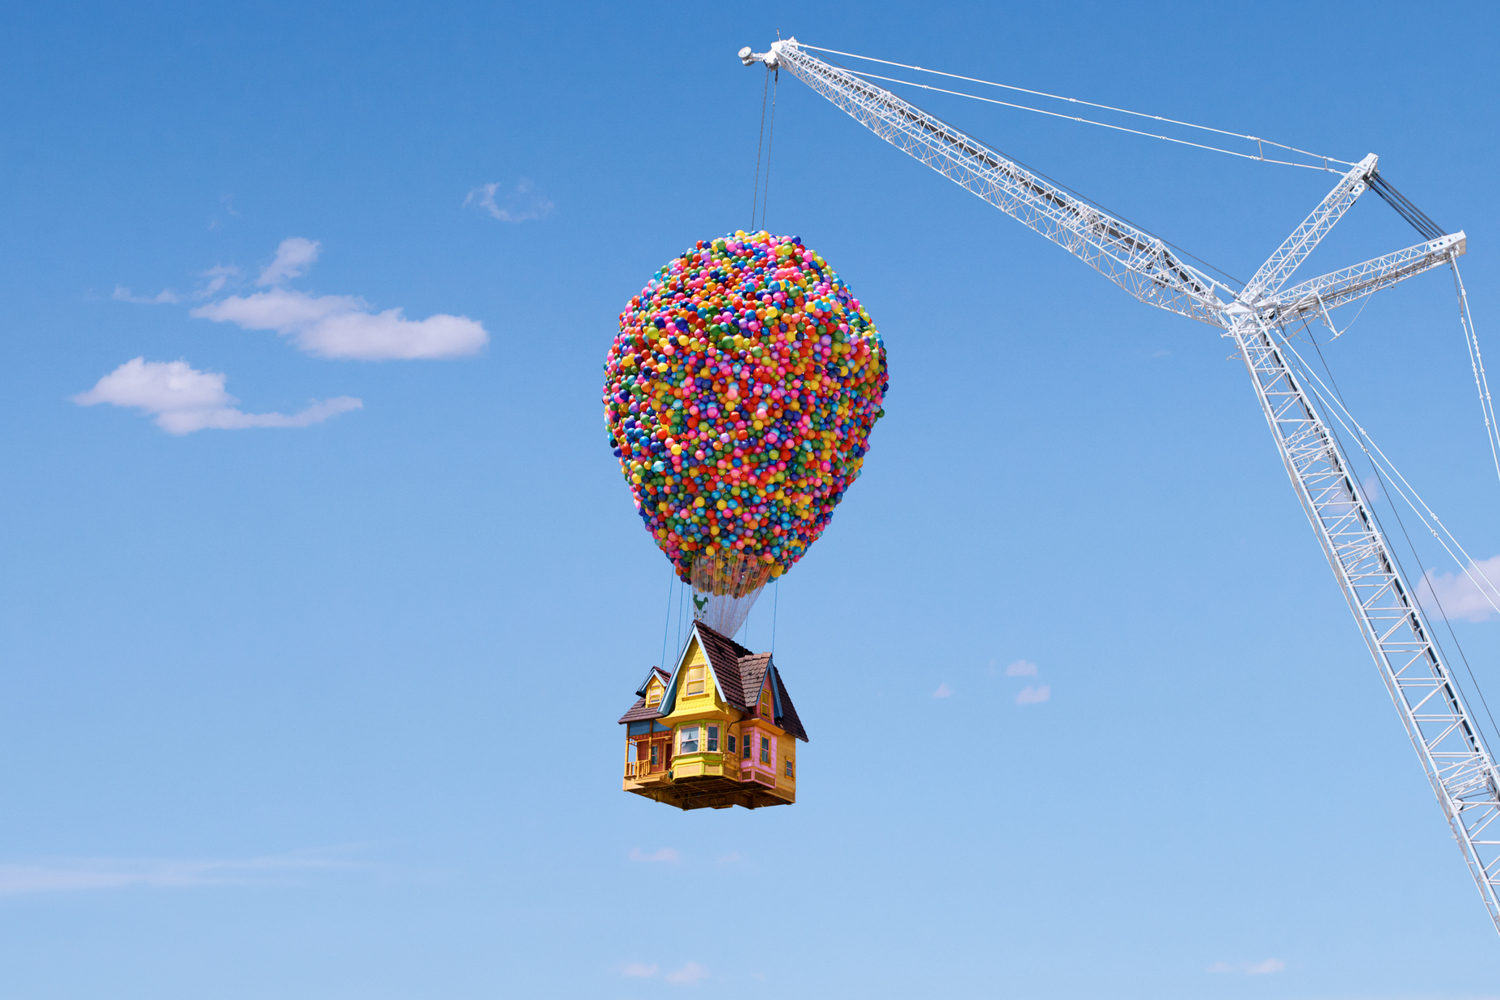 Pixar's UP House 入住《天外奇蹟》氣球屋